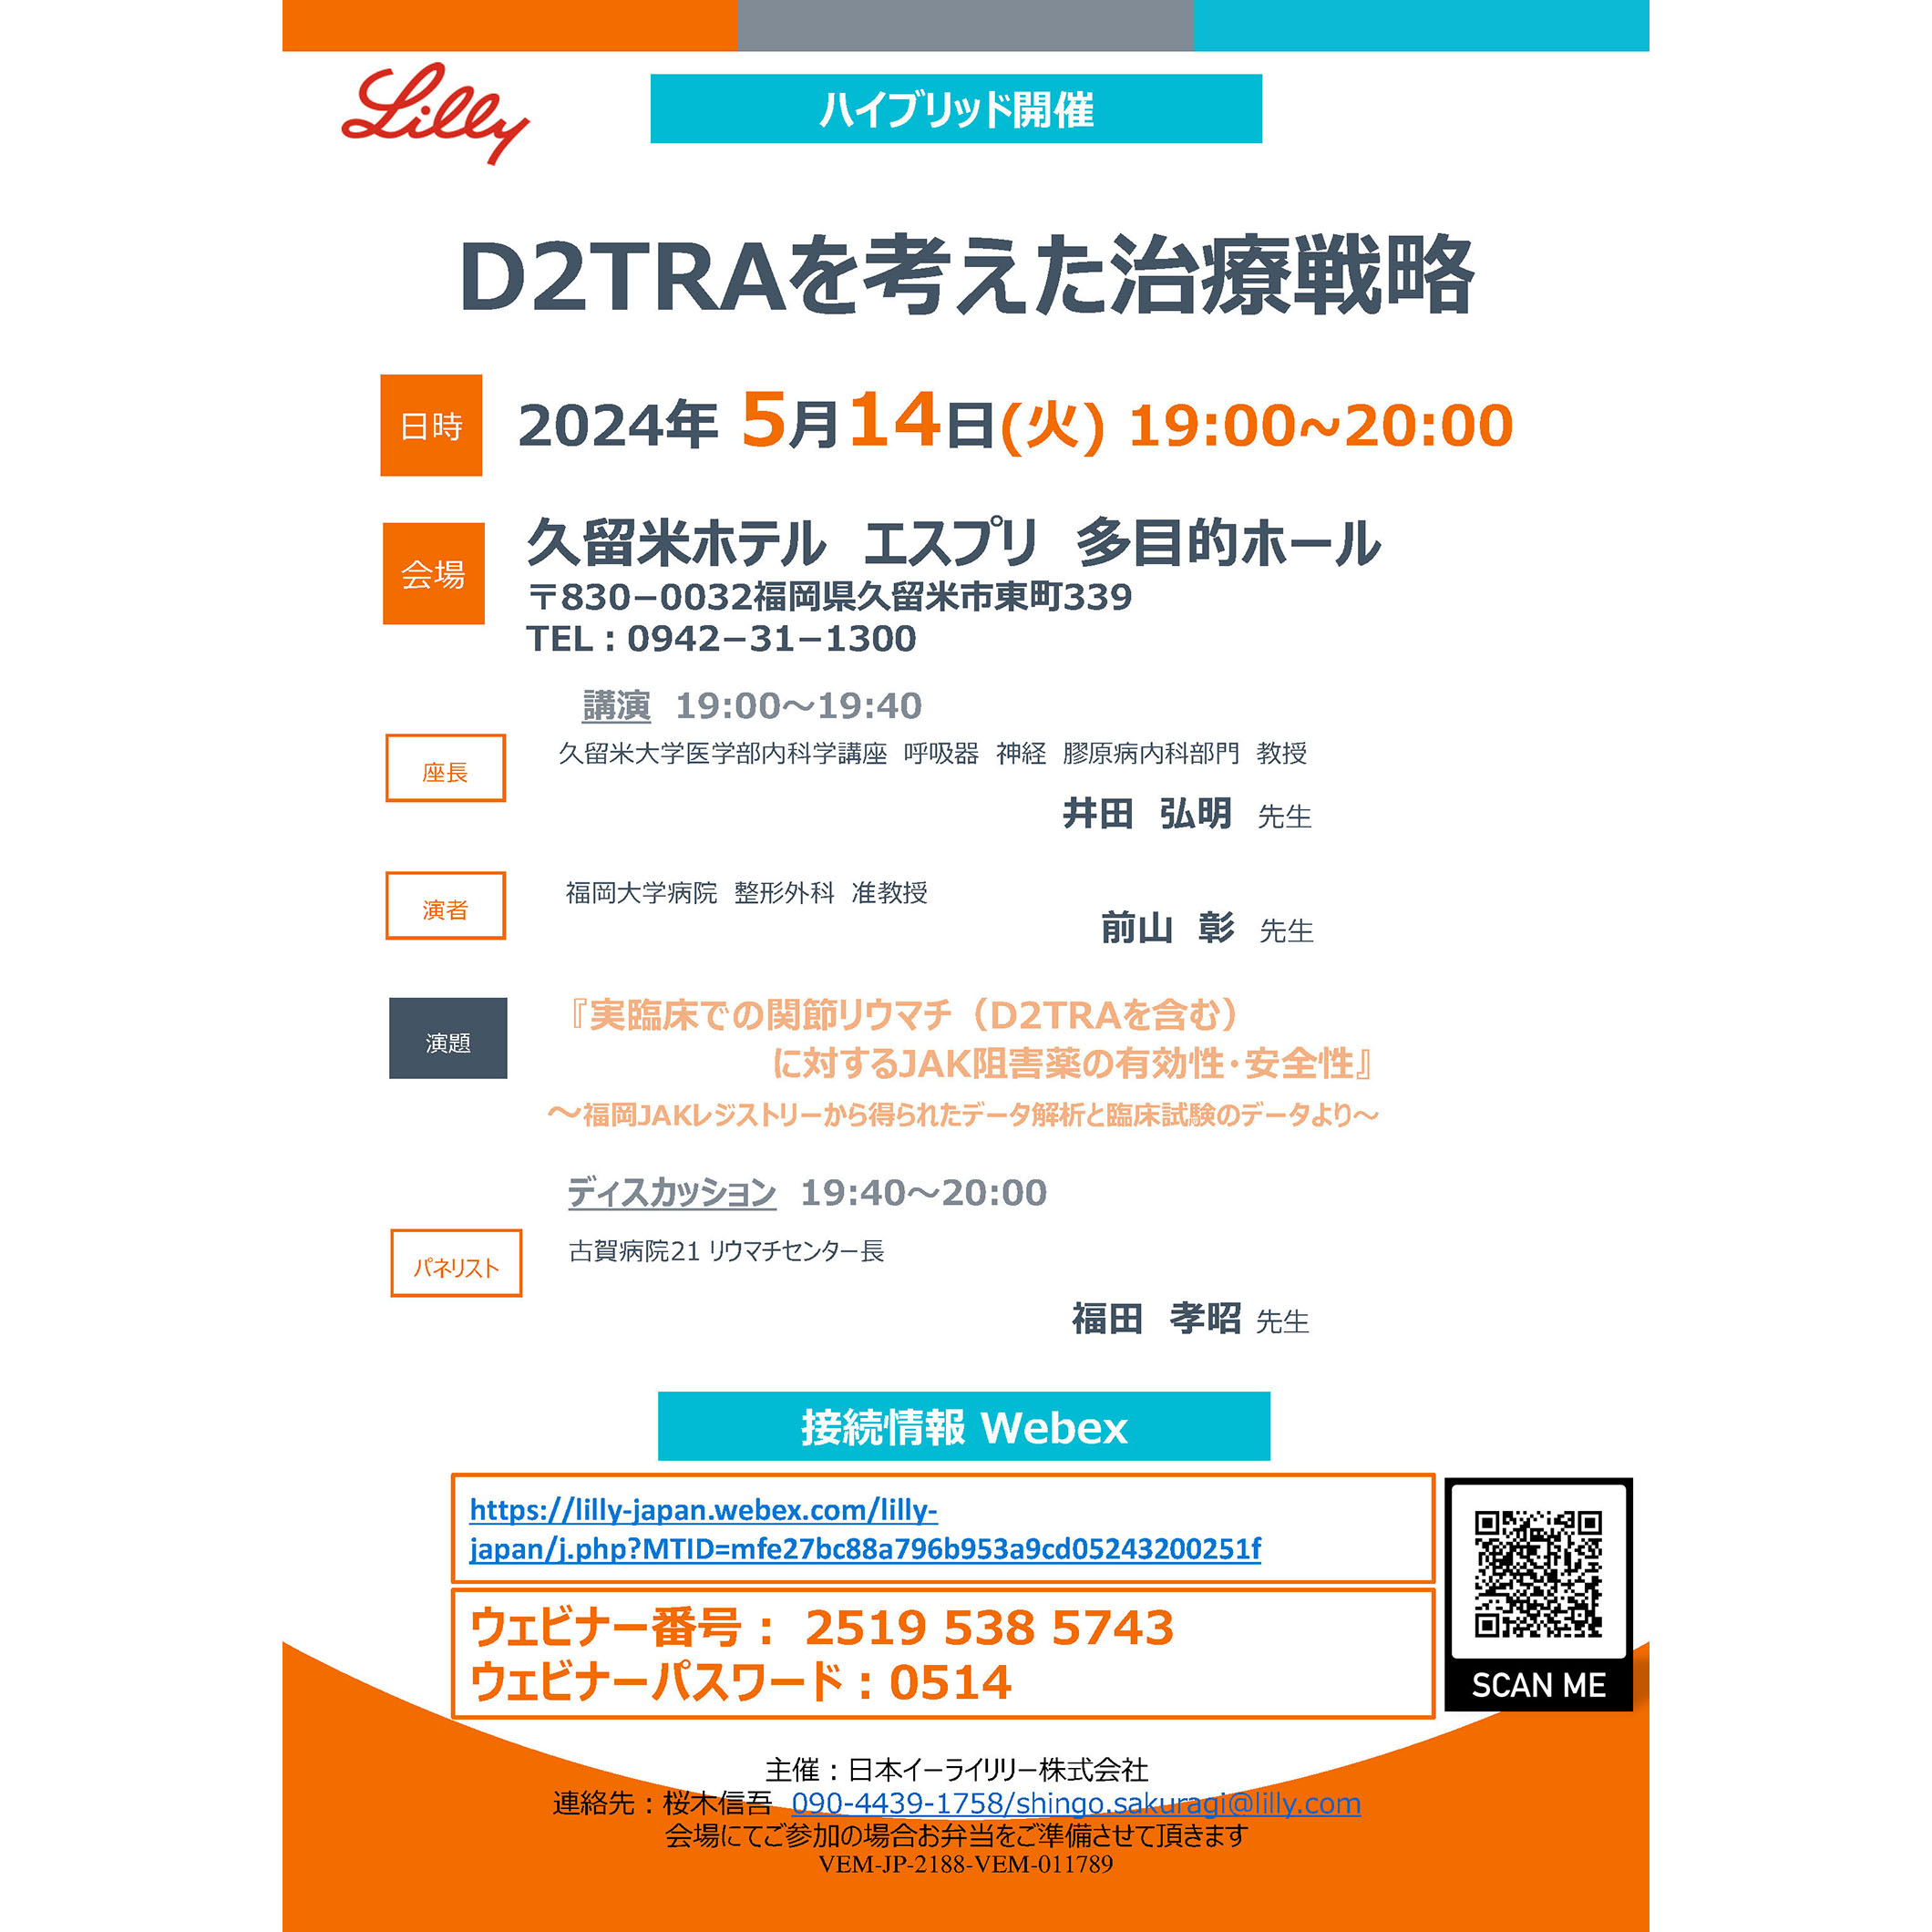 2024年5月14日(火) D2TRAを考えた治療戦略が開催されます。 | 福岡大学 